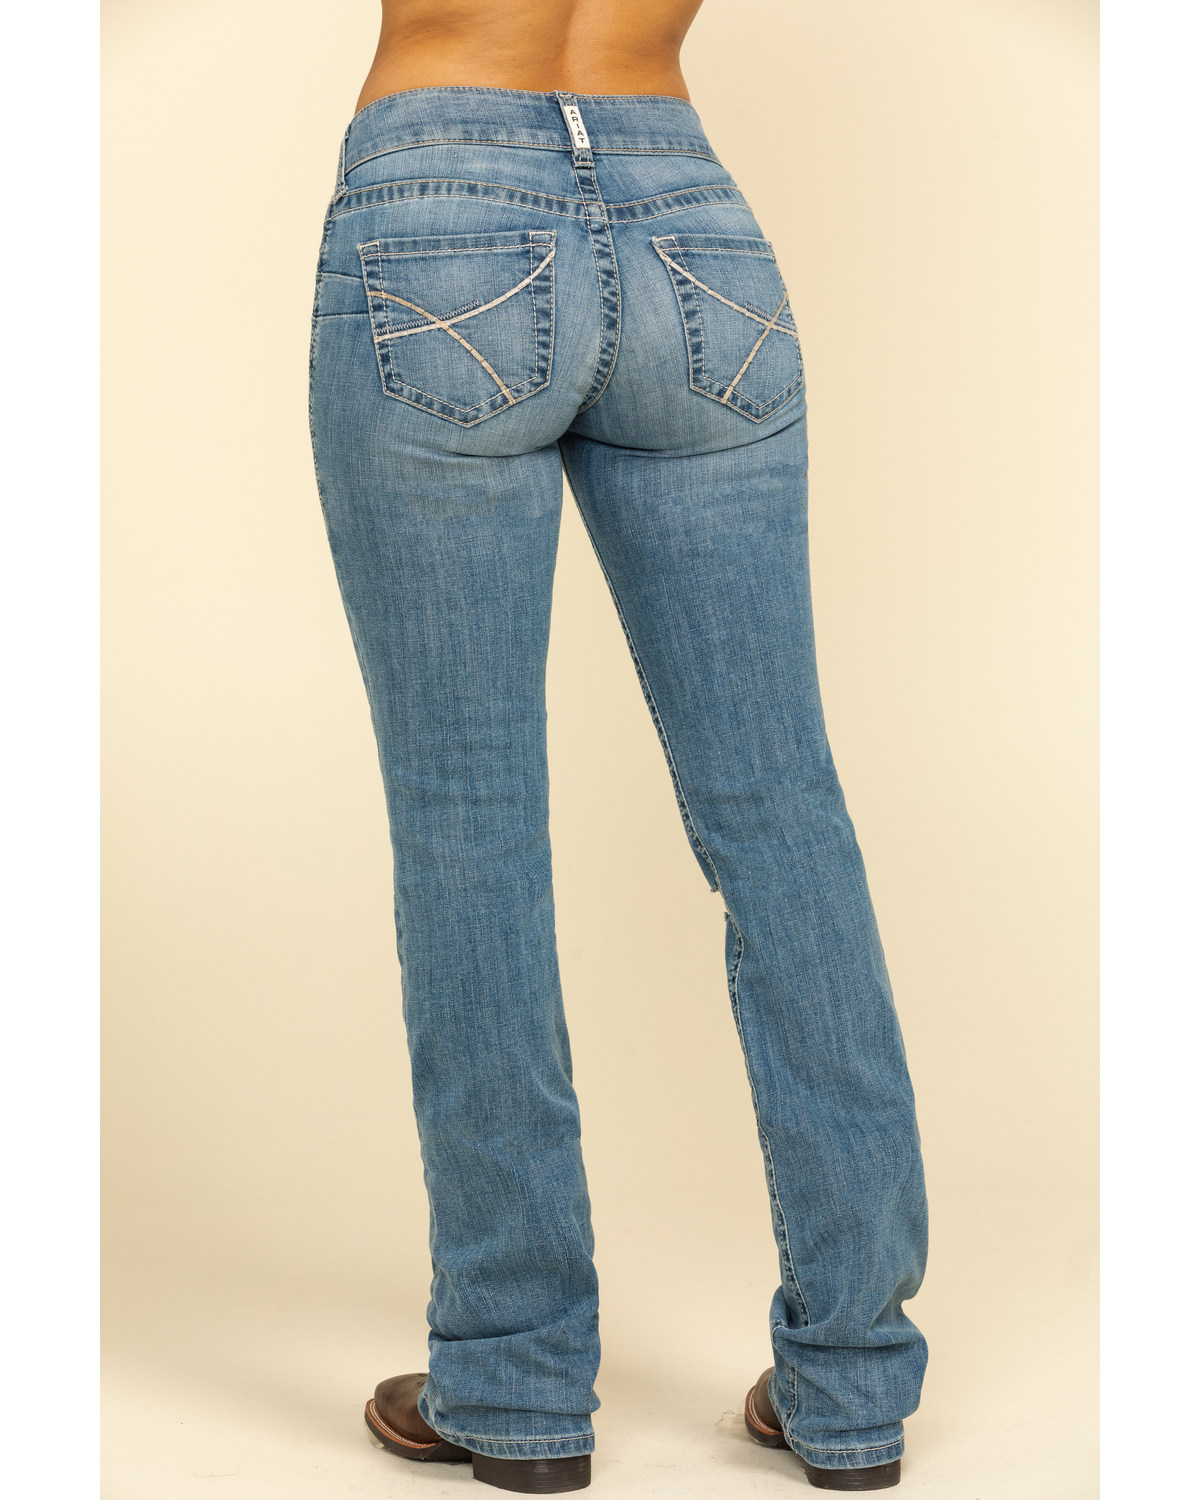 light blue bootcut jeans women's